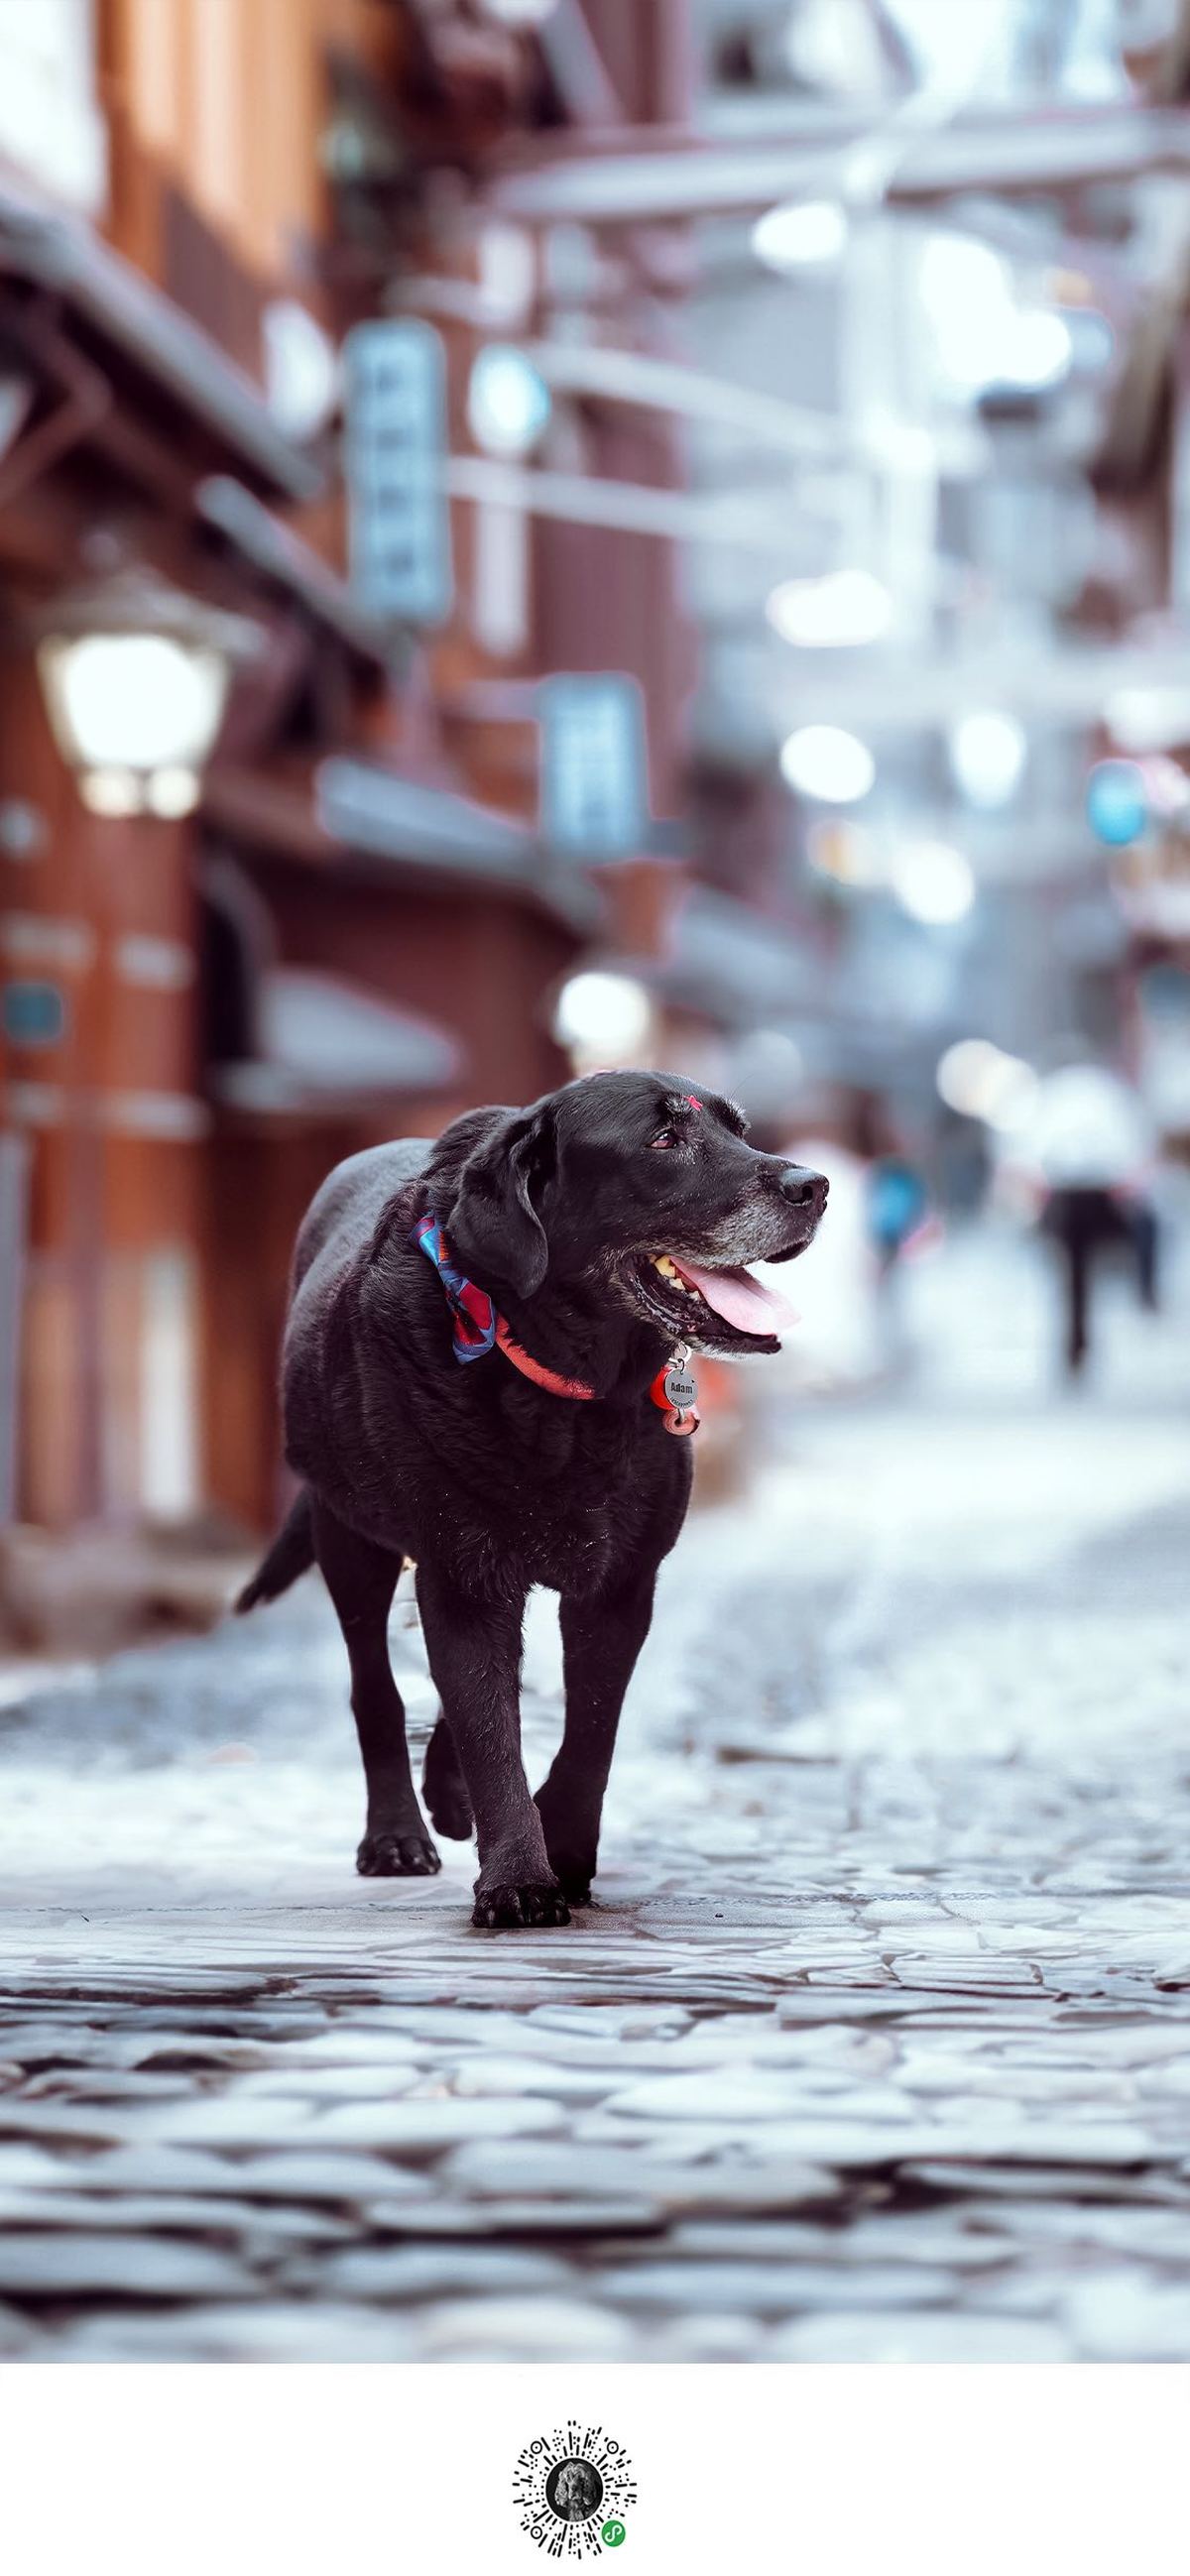 一条系着狗绳的黑色狗正在城市街道上散步